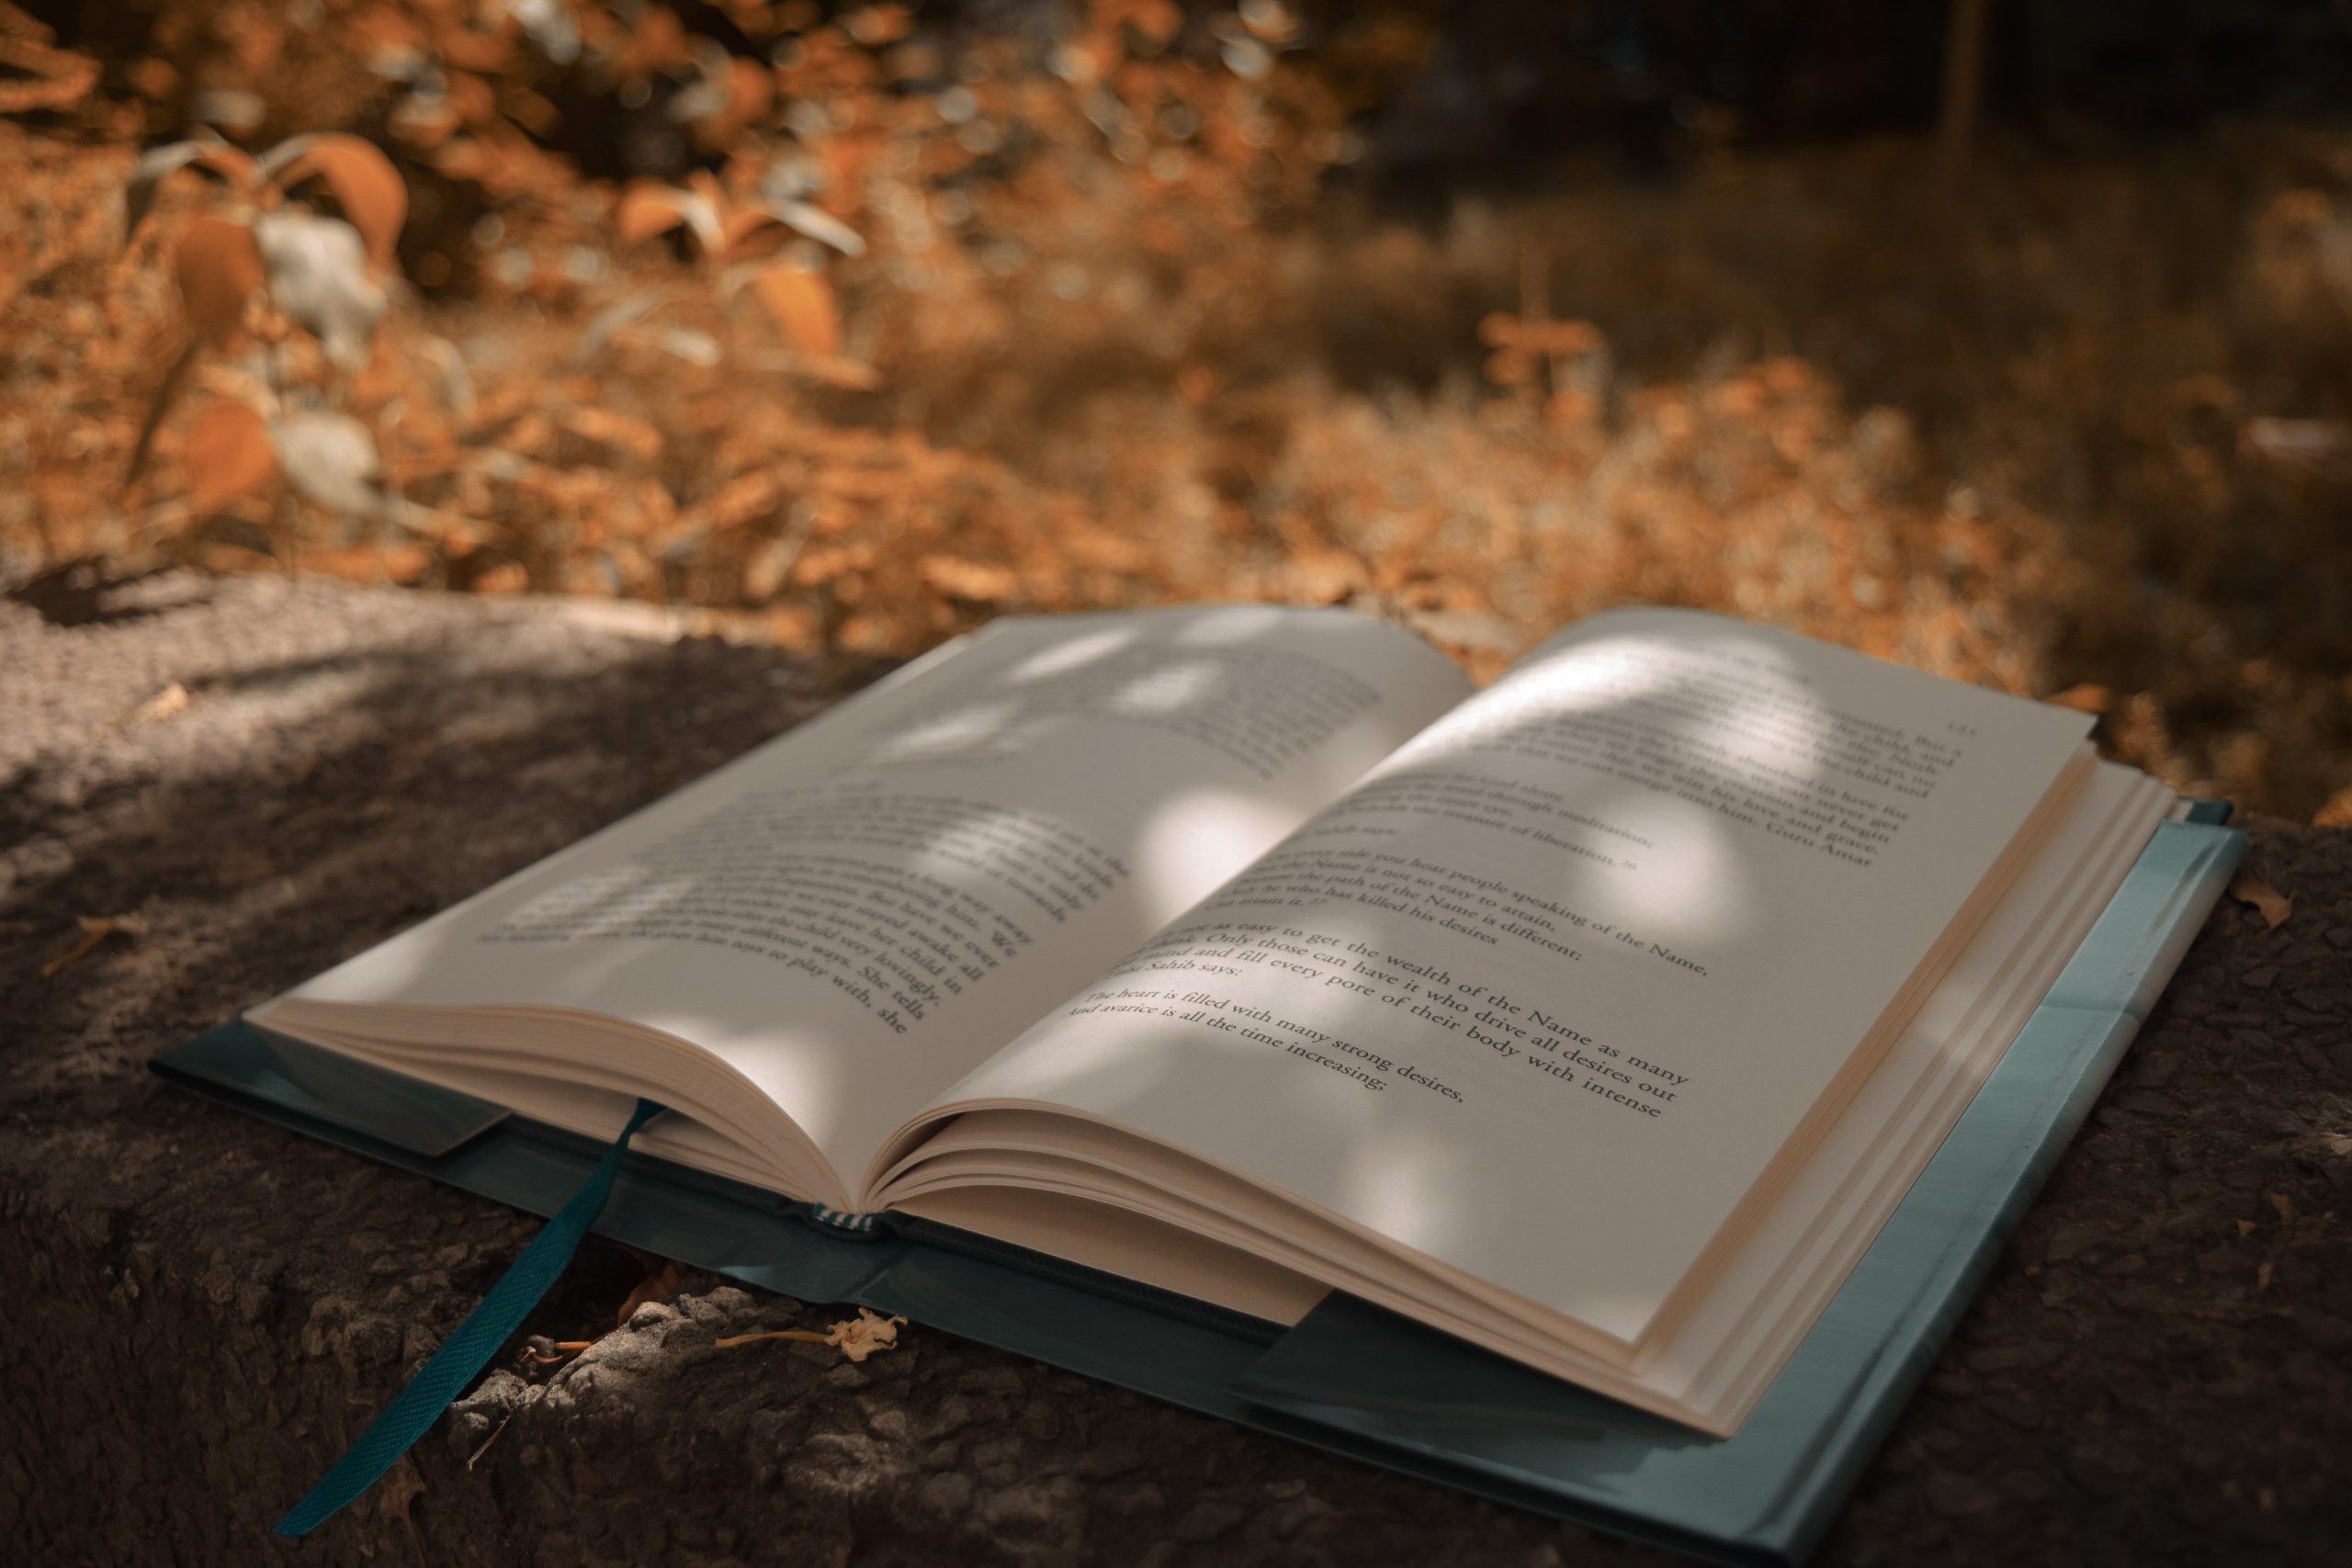 Memperingati Hari Buku Dengan Menanamkan Kecintaan Pada Membaca